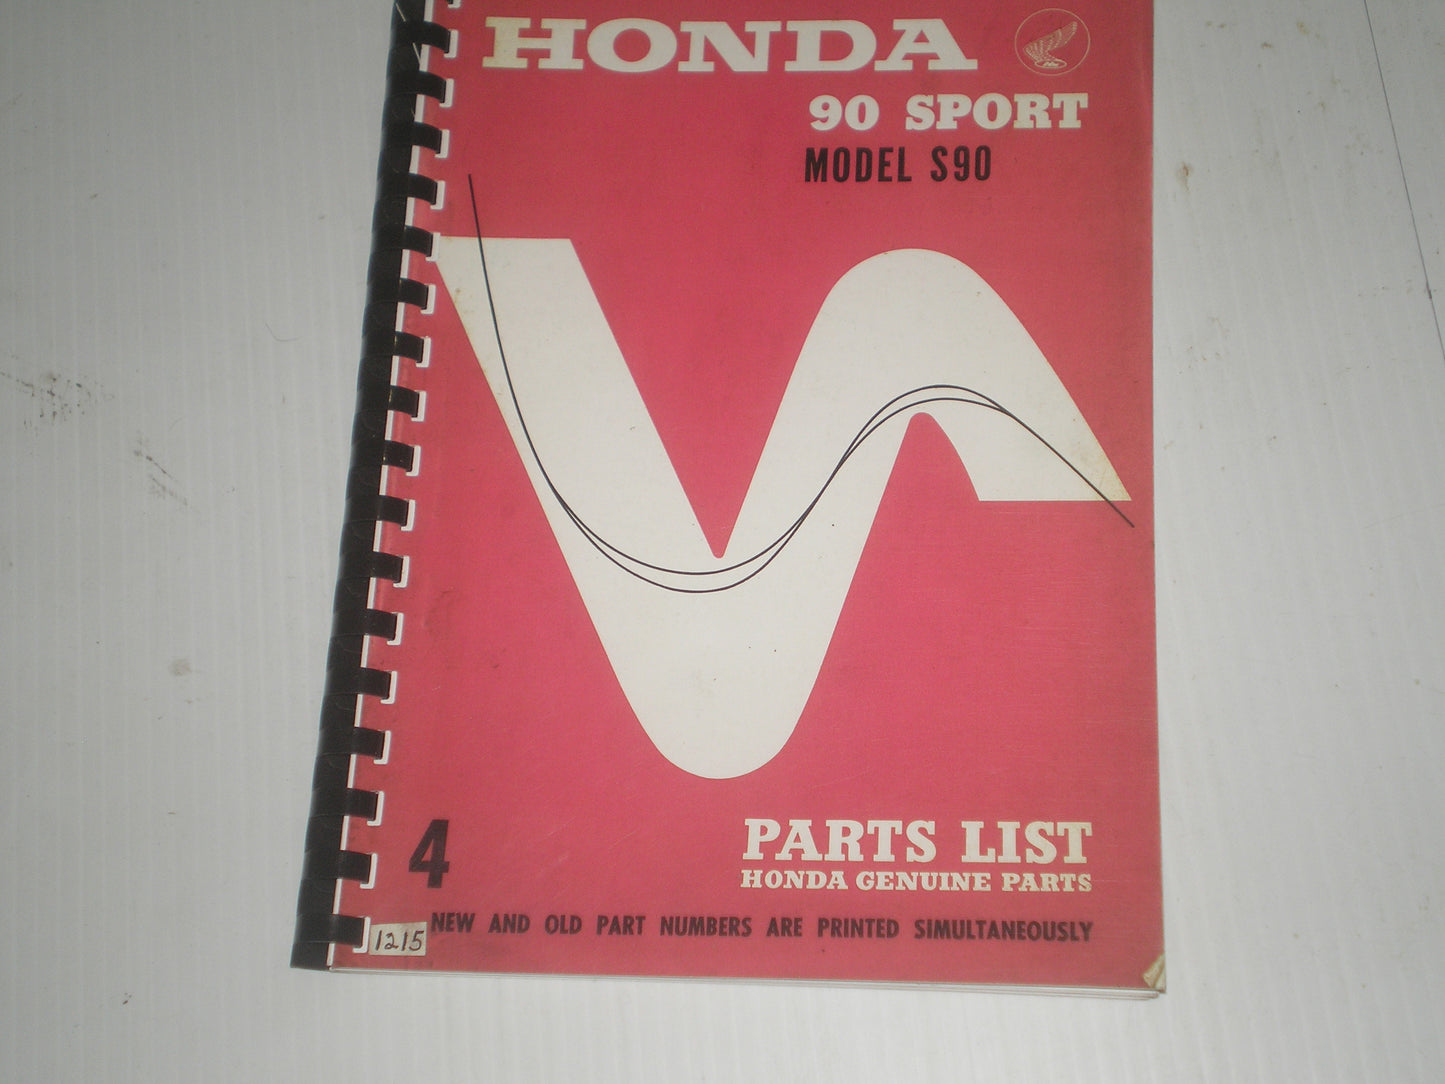 HONDA 90 Sport  Model S90  1965  Factory Parts List  #1215